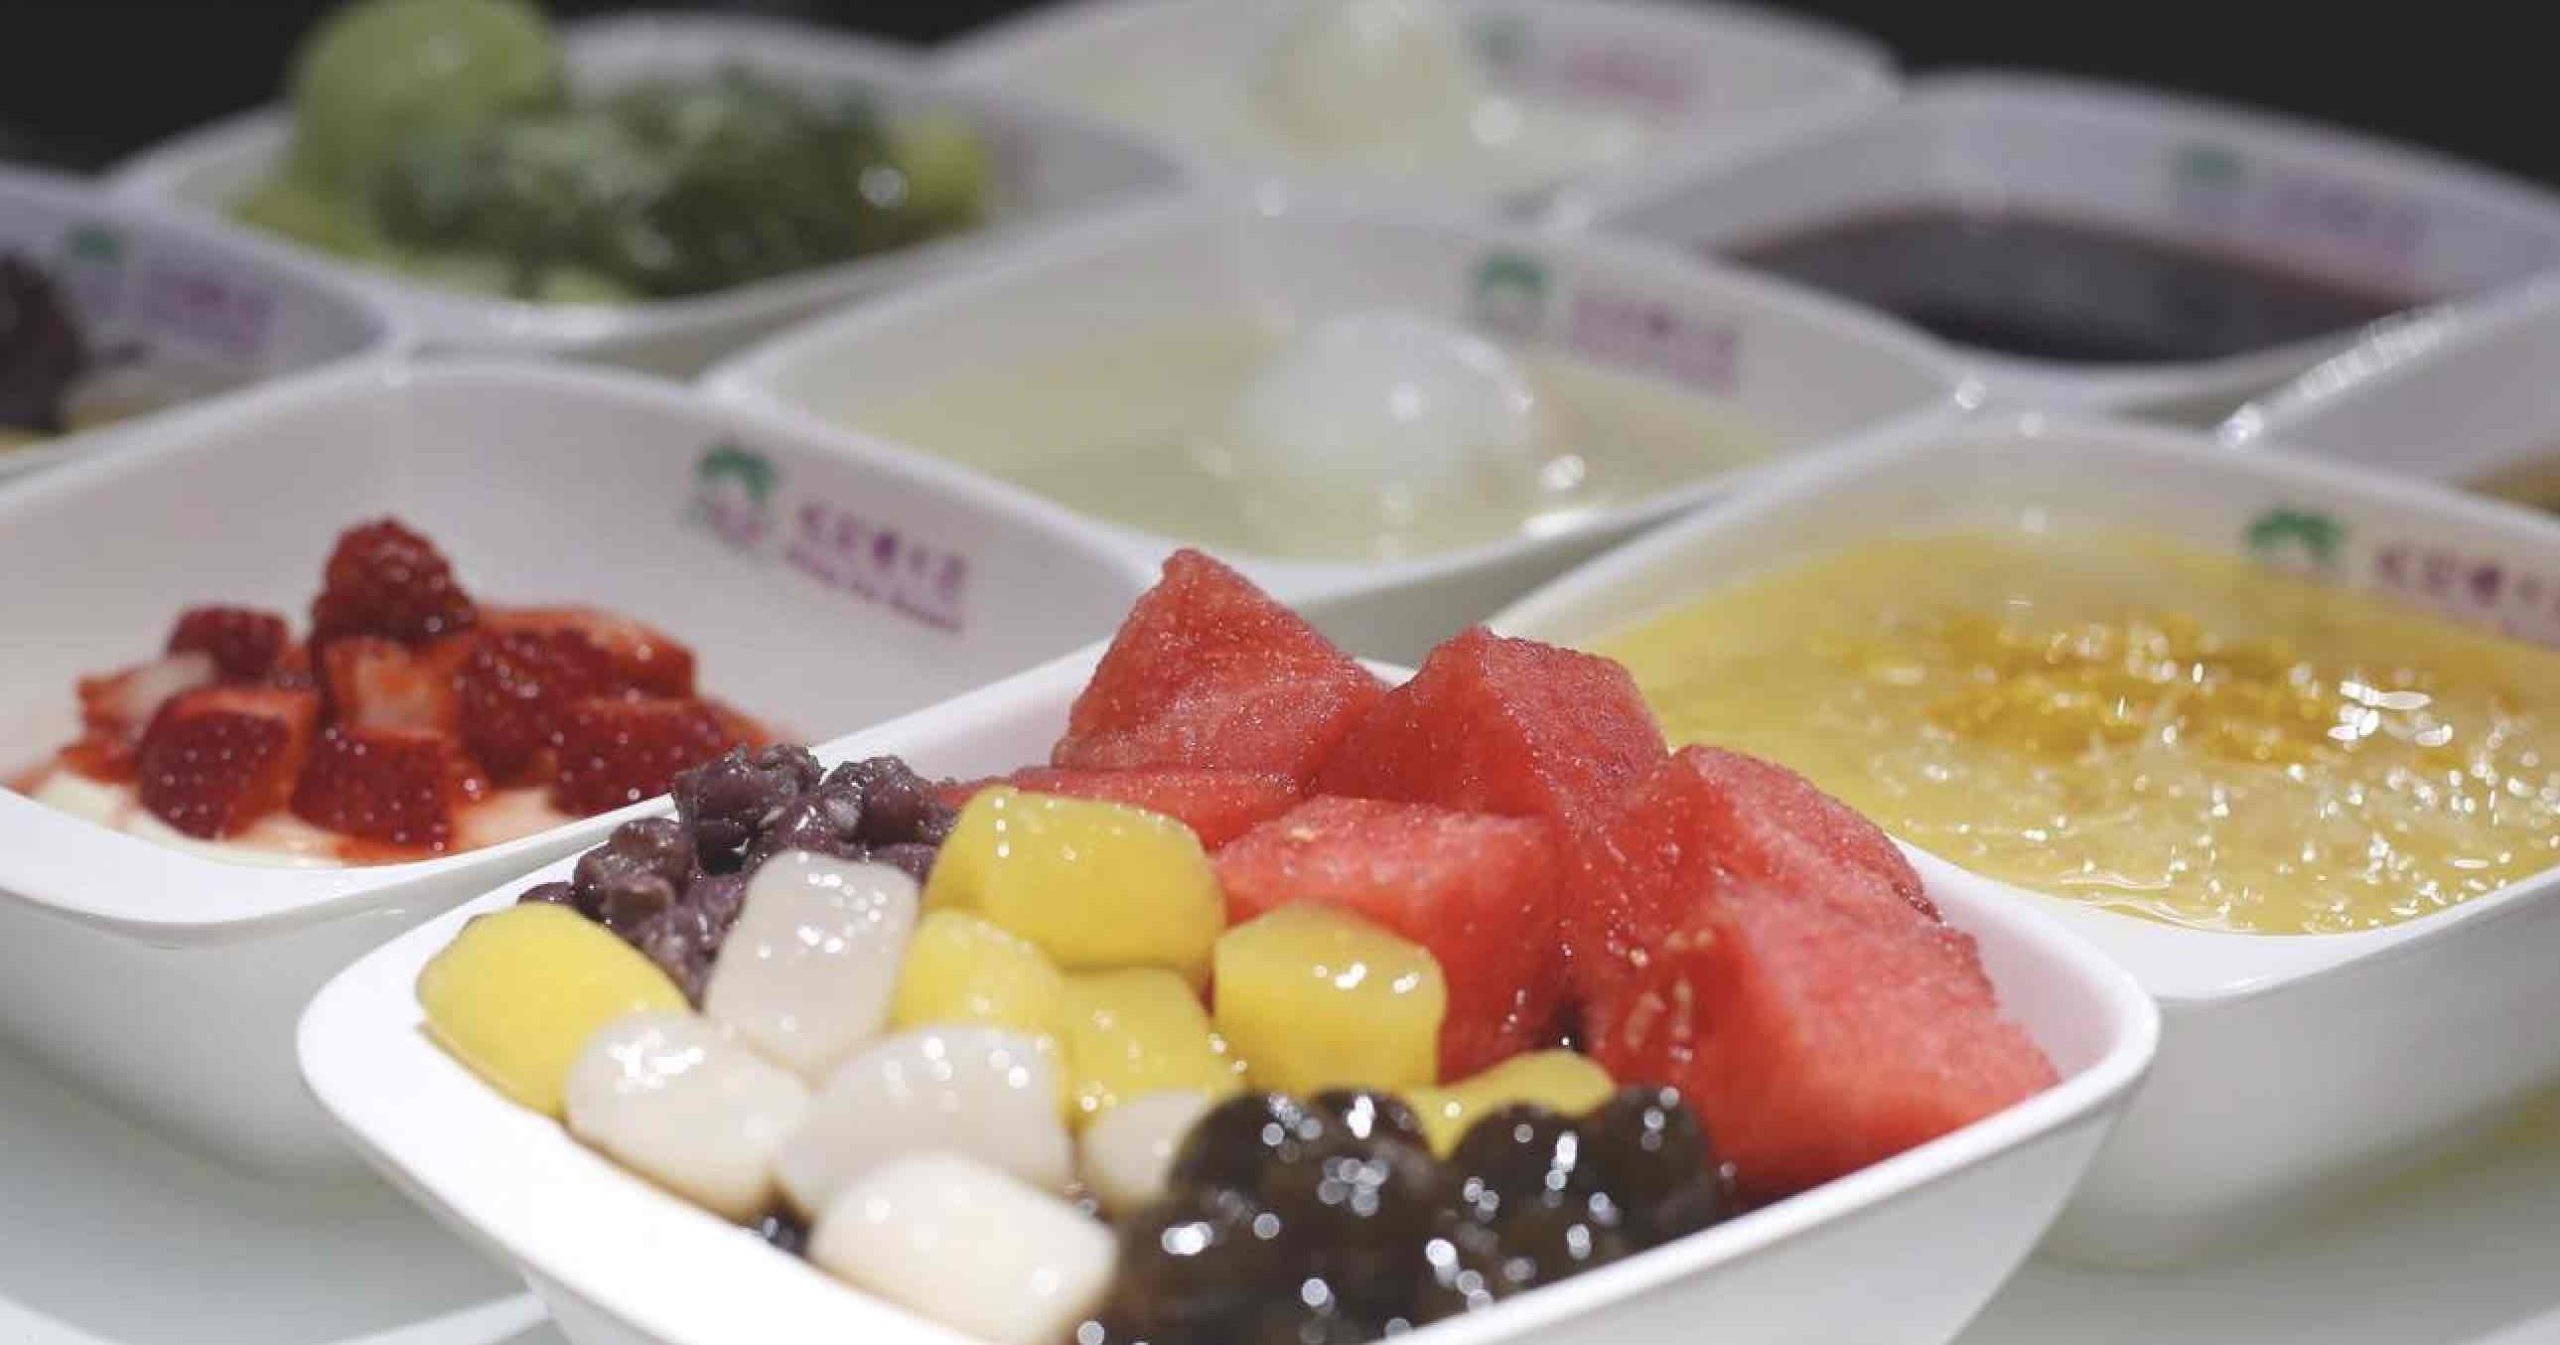 松記糖水店 ChungKee Dessert的特許經營香港區加盟店項目2